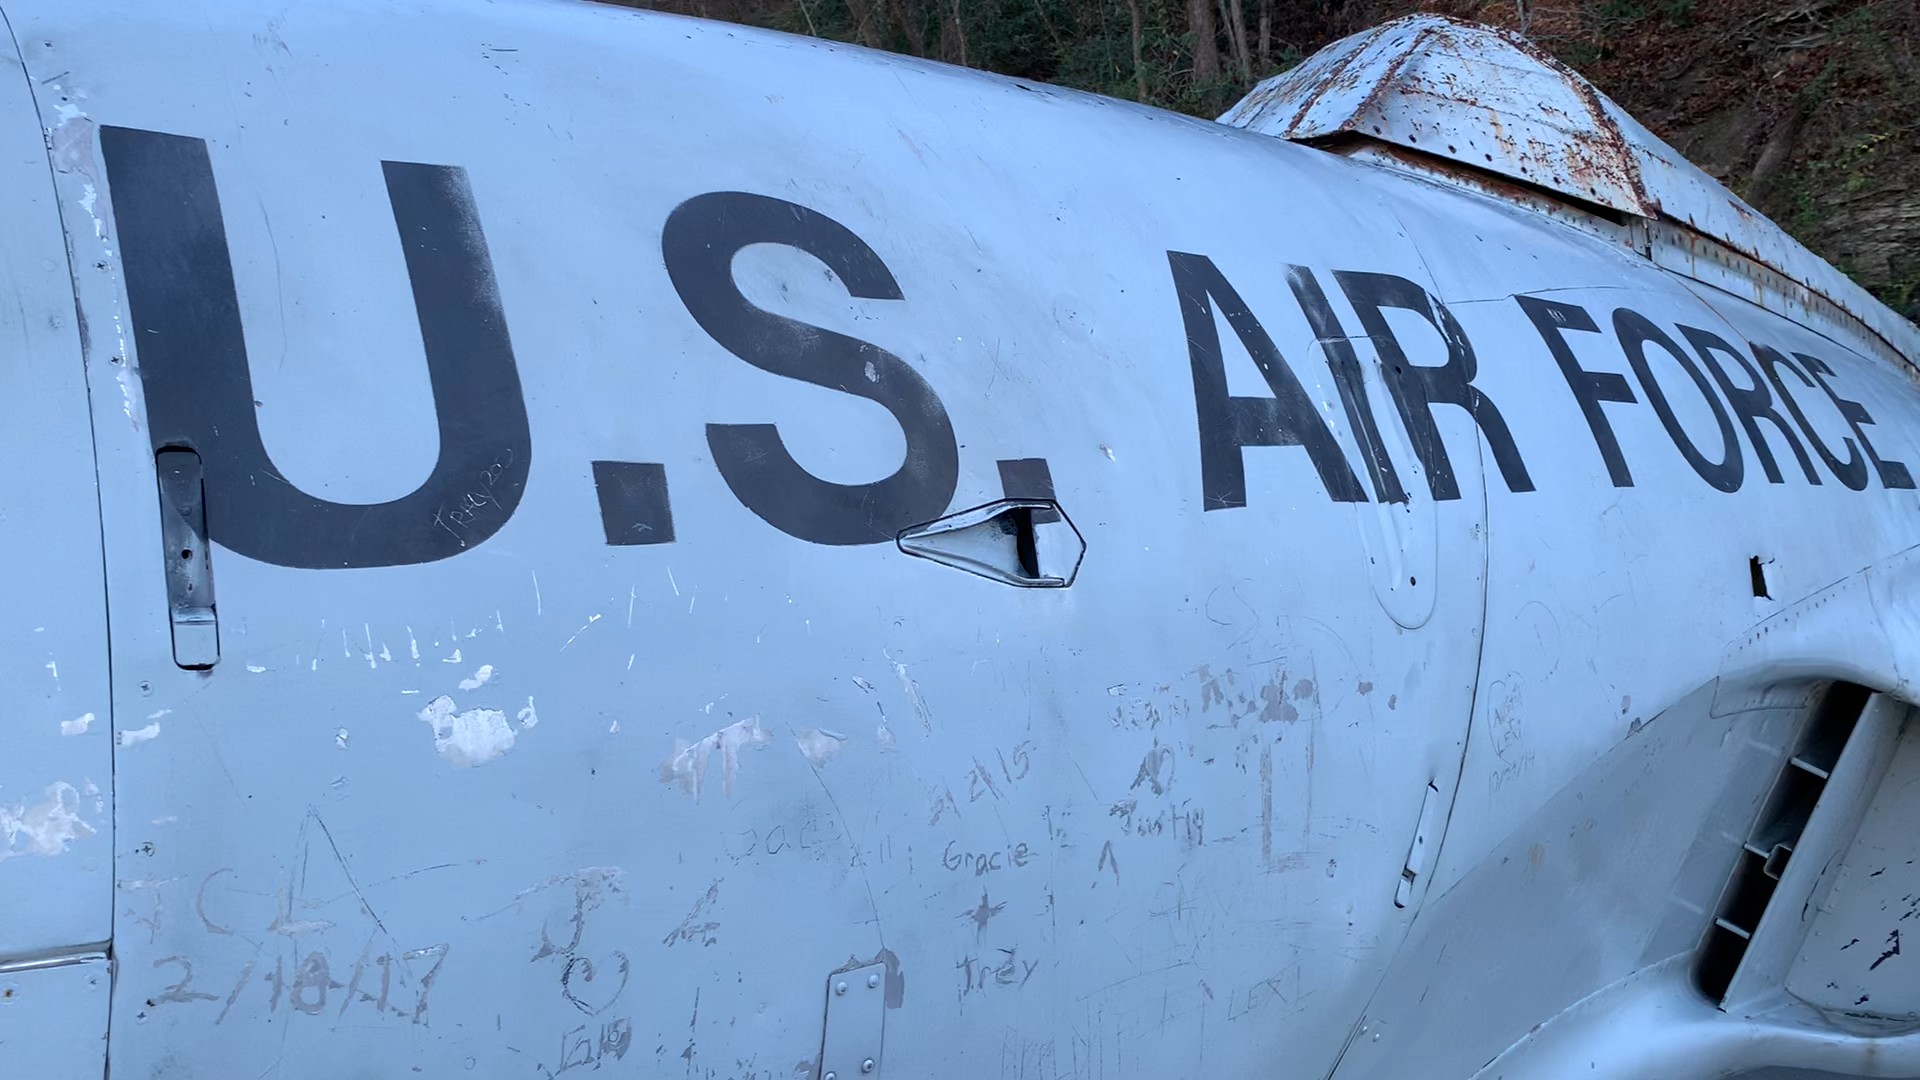 Local VFW Post displays Lockheed T-33 at memorial park